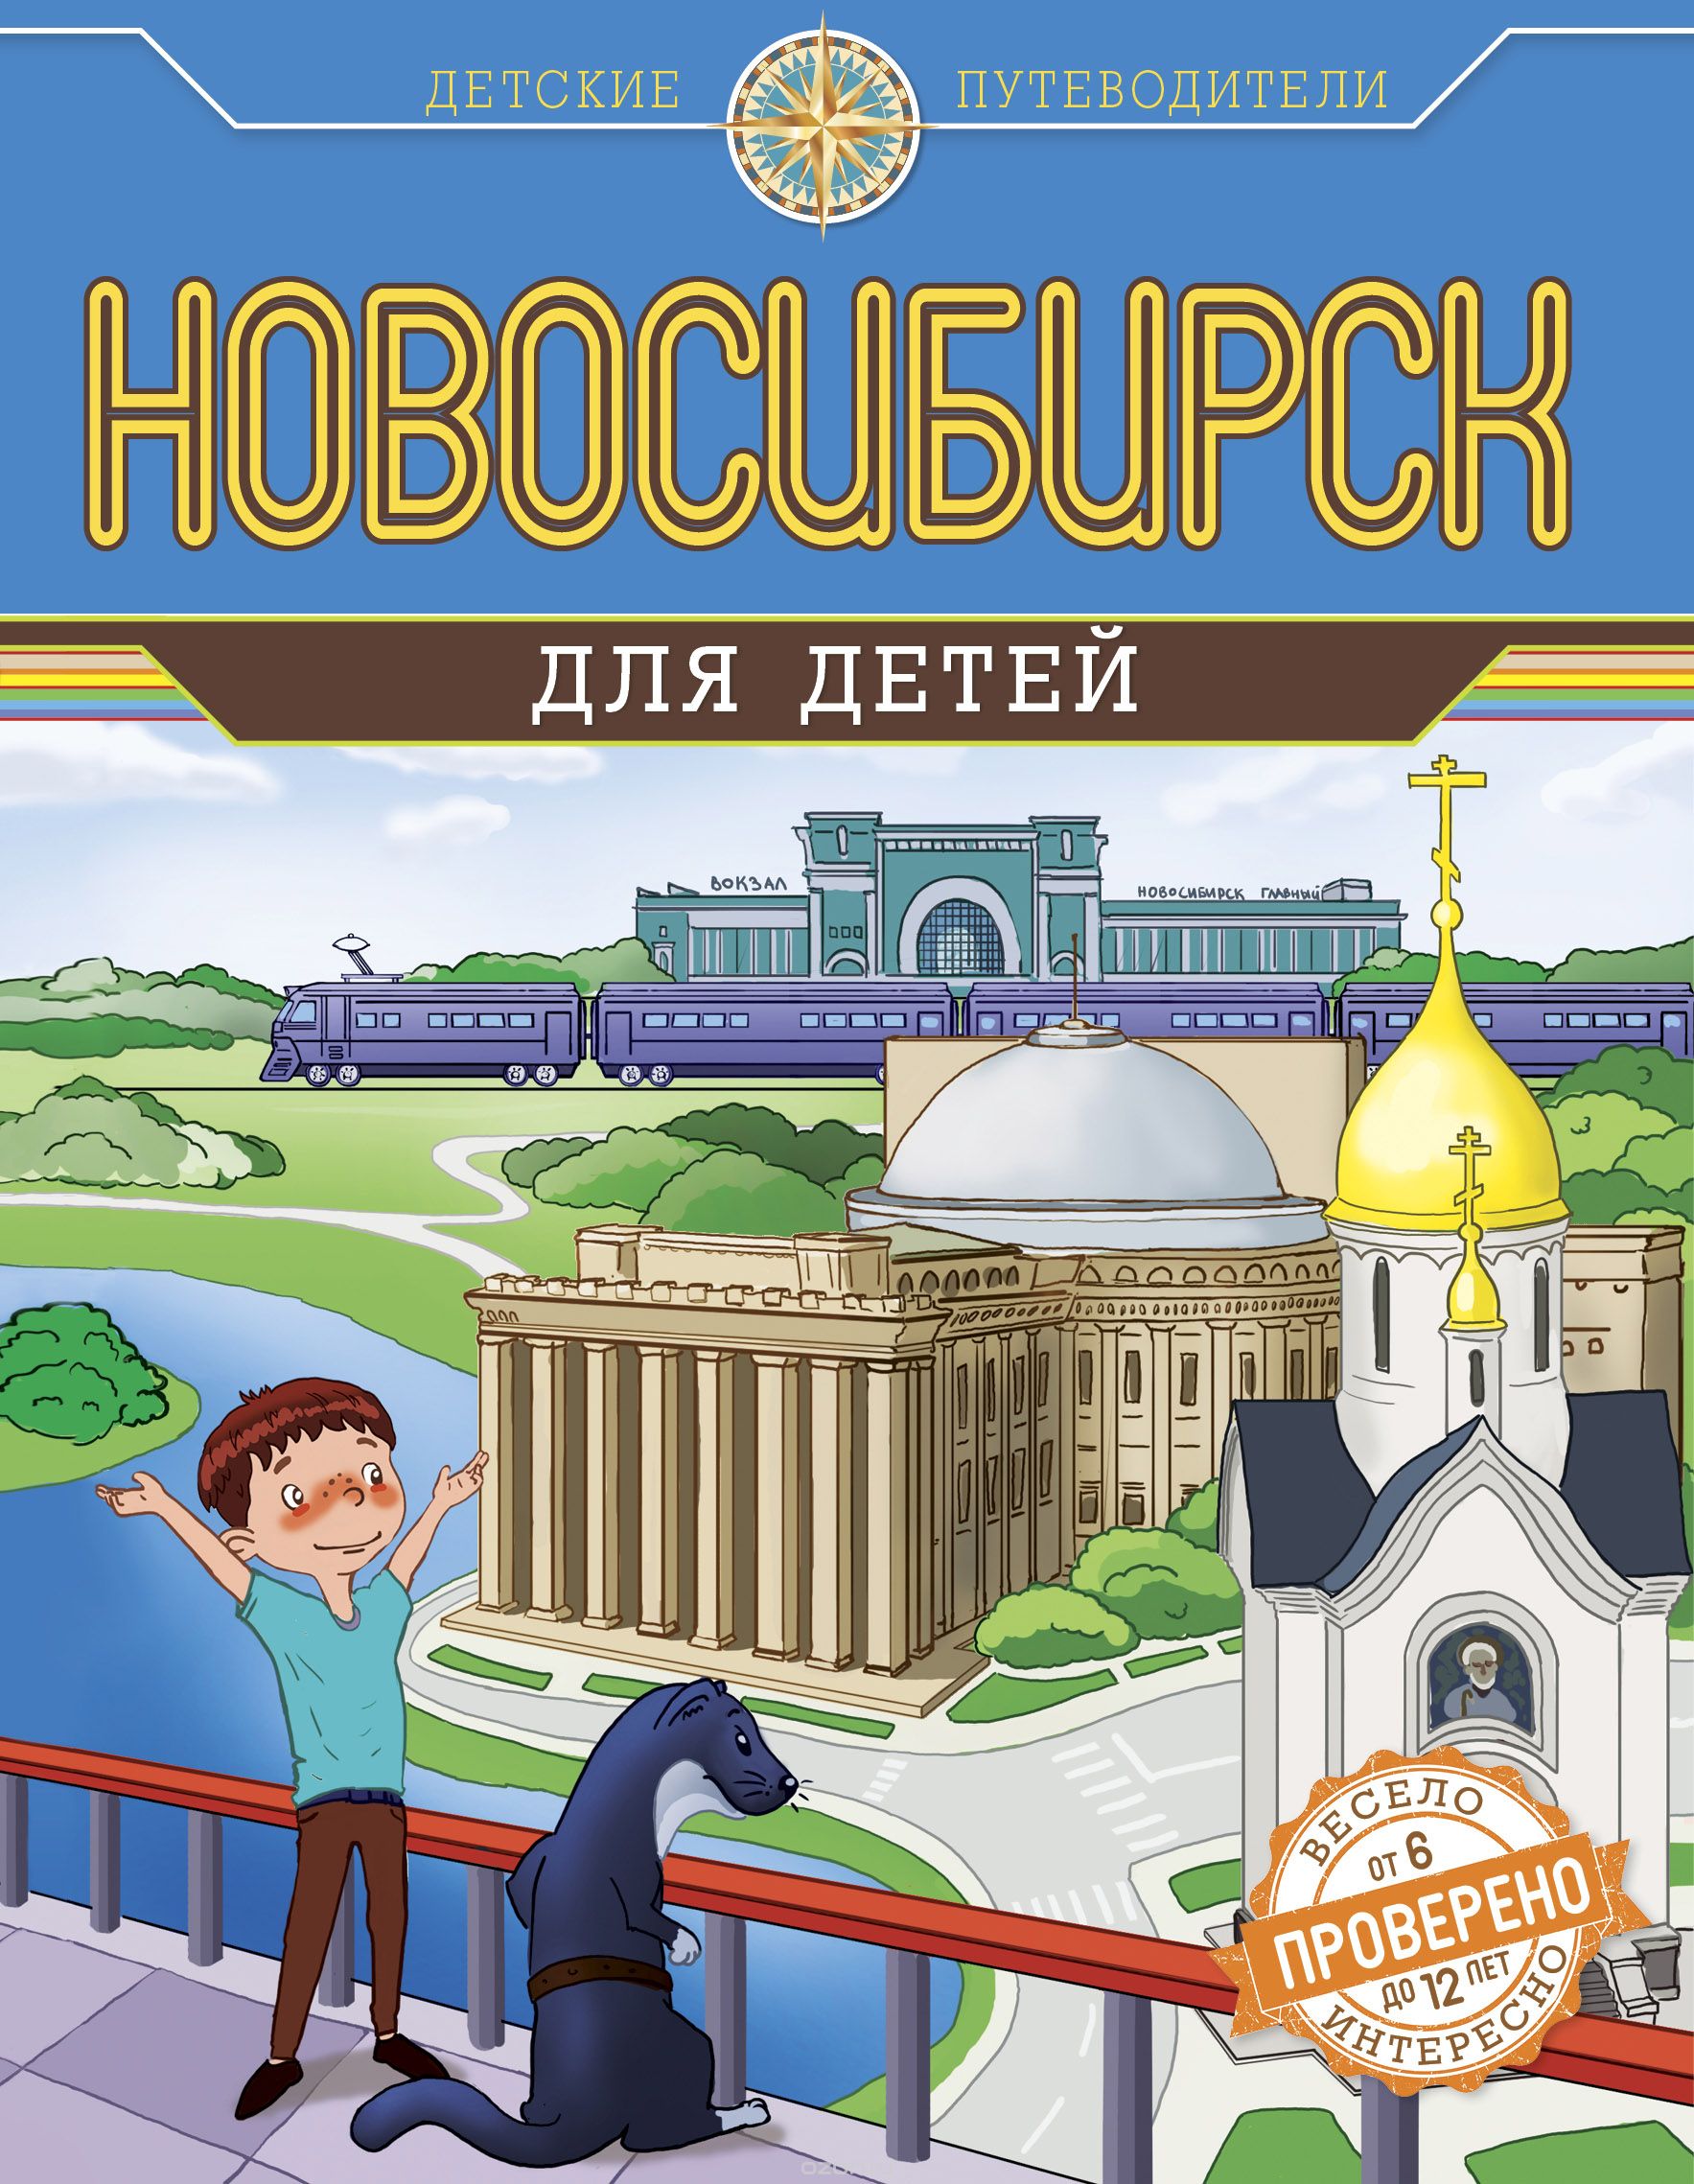 Скачать книгу "Новосибирск для детей, А. Квашин"